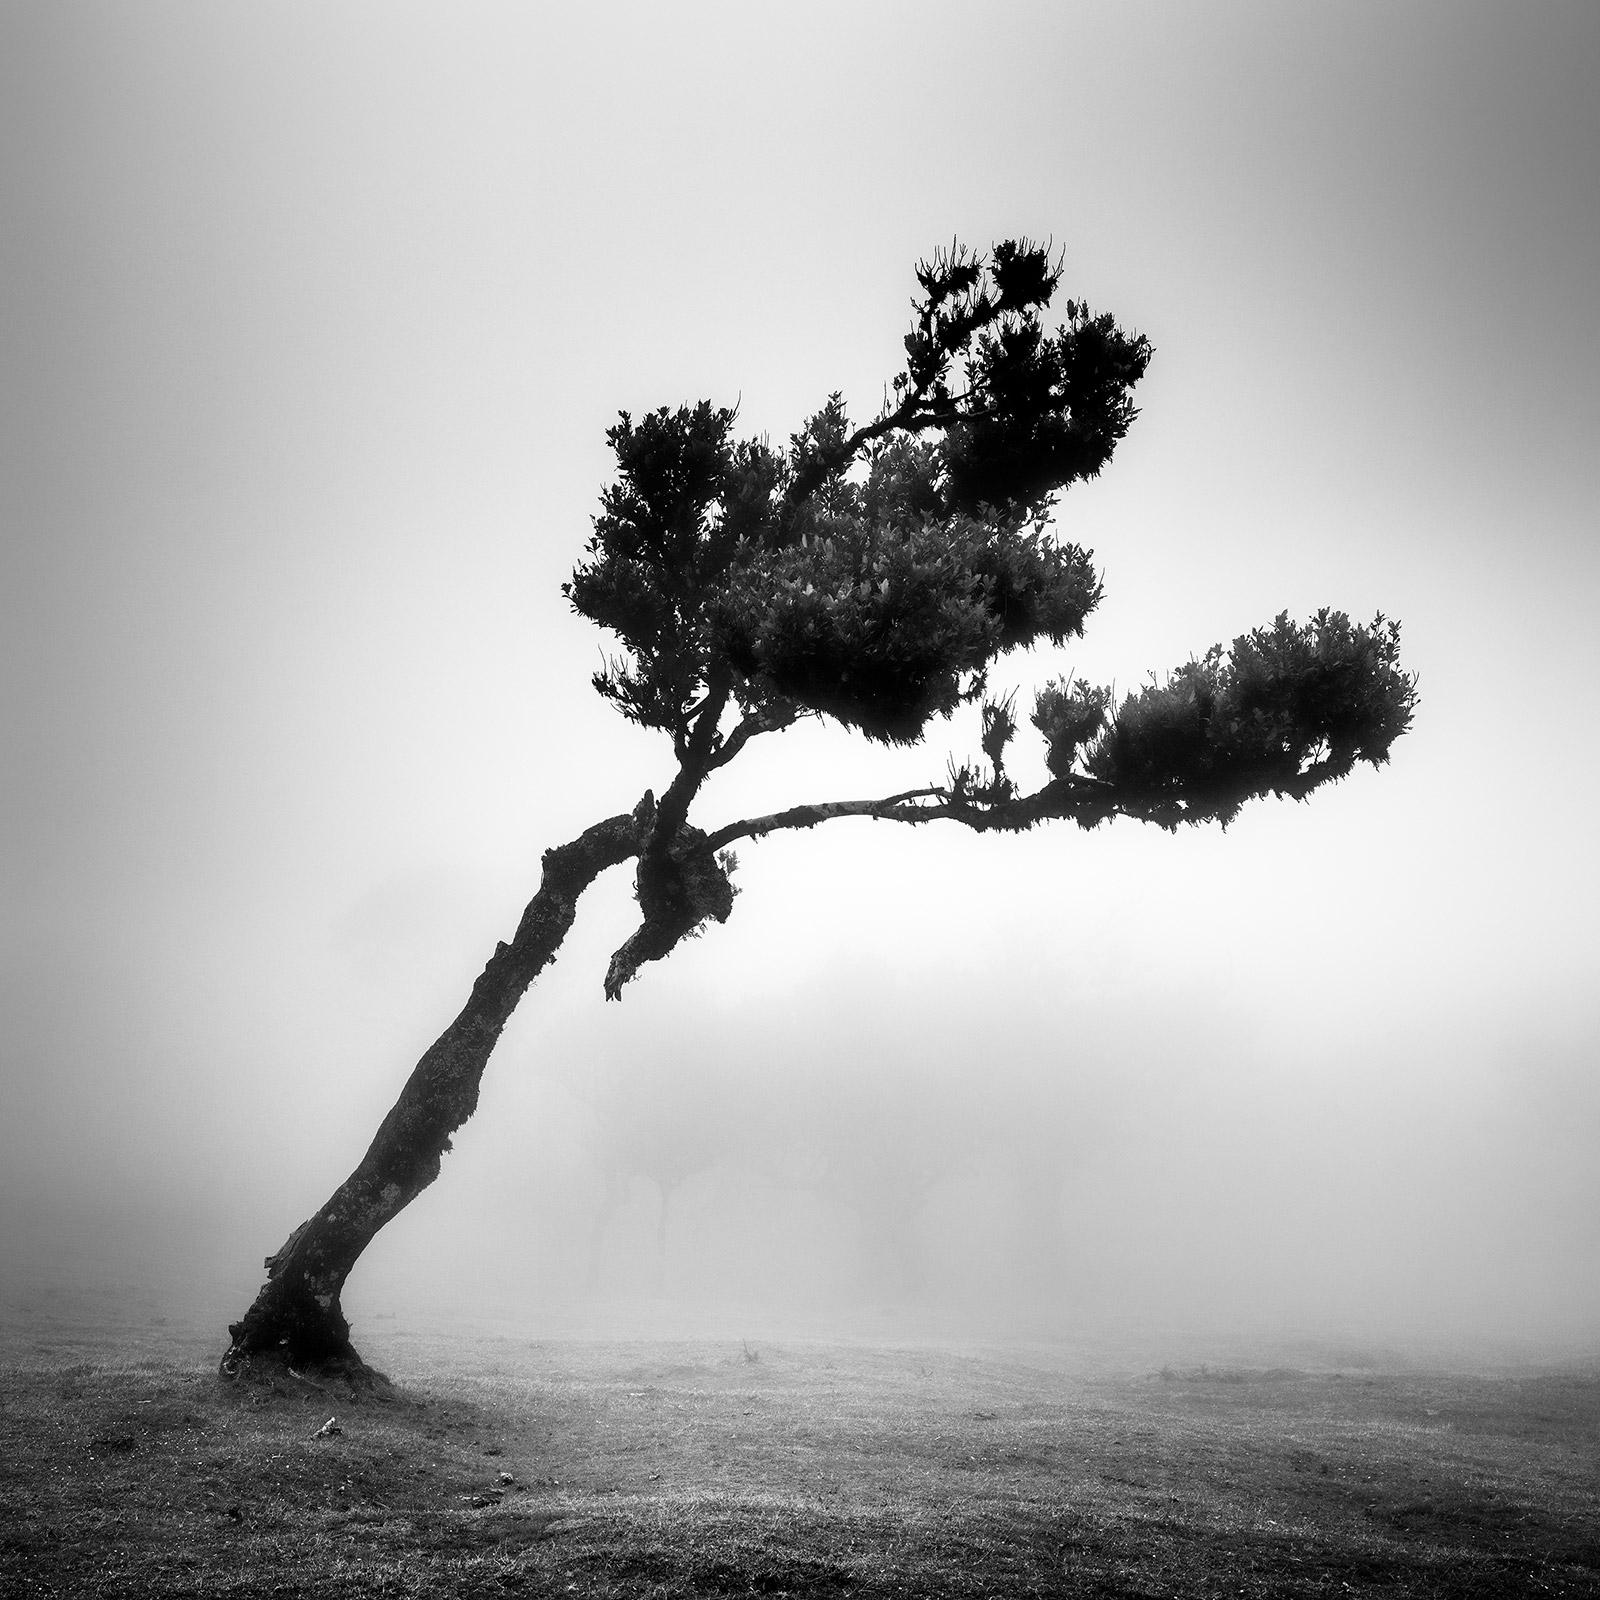 Landscape Photograph Gerald Berghammer - Cerf dans une forêt de fées, arbre mystique, Madère, photo d'art de paysage en noir et blanc 